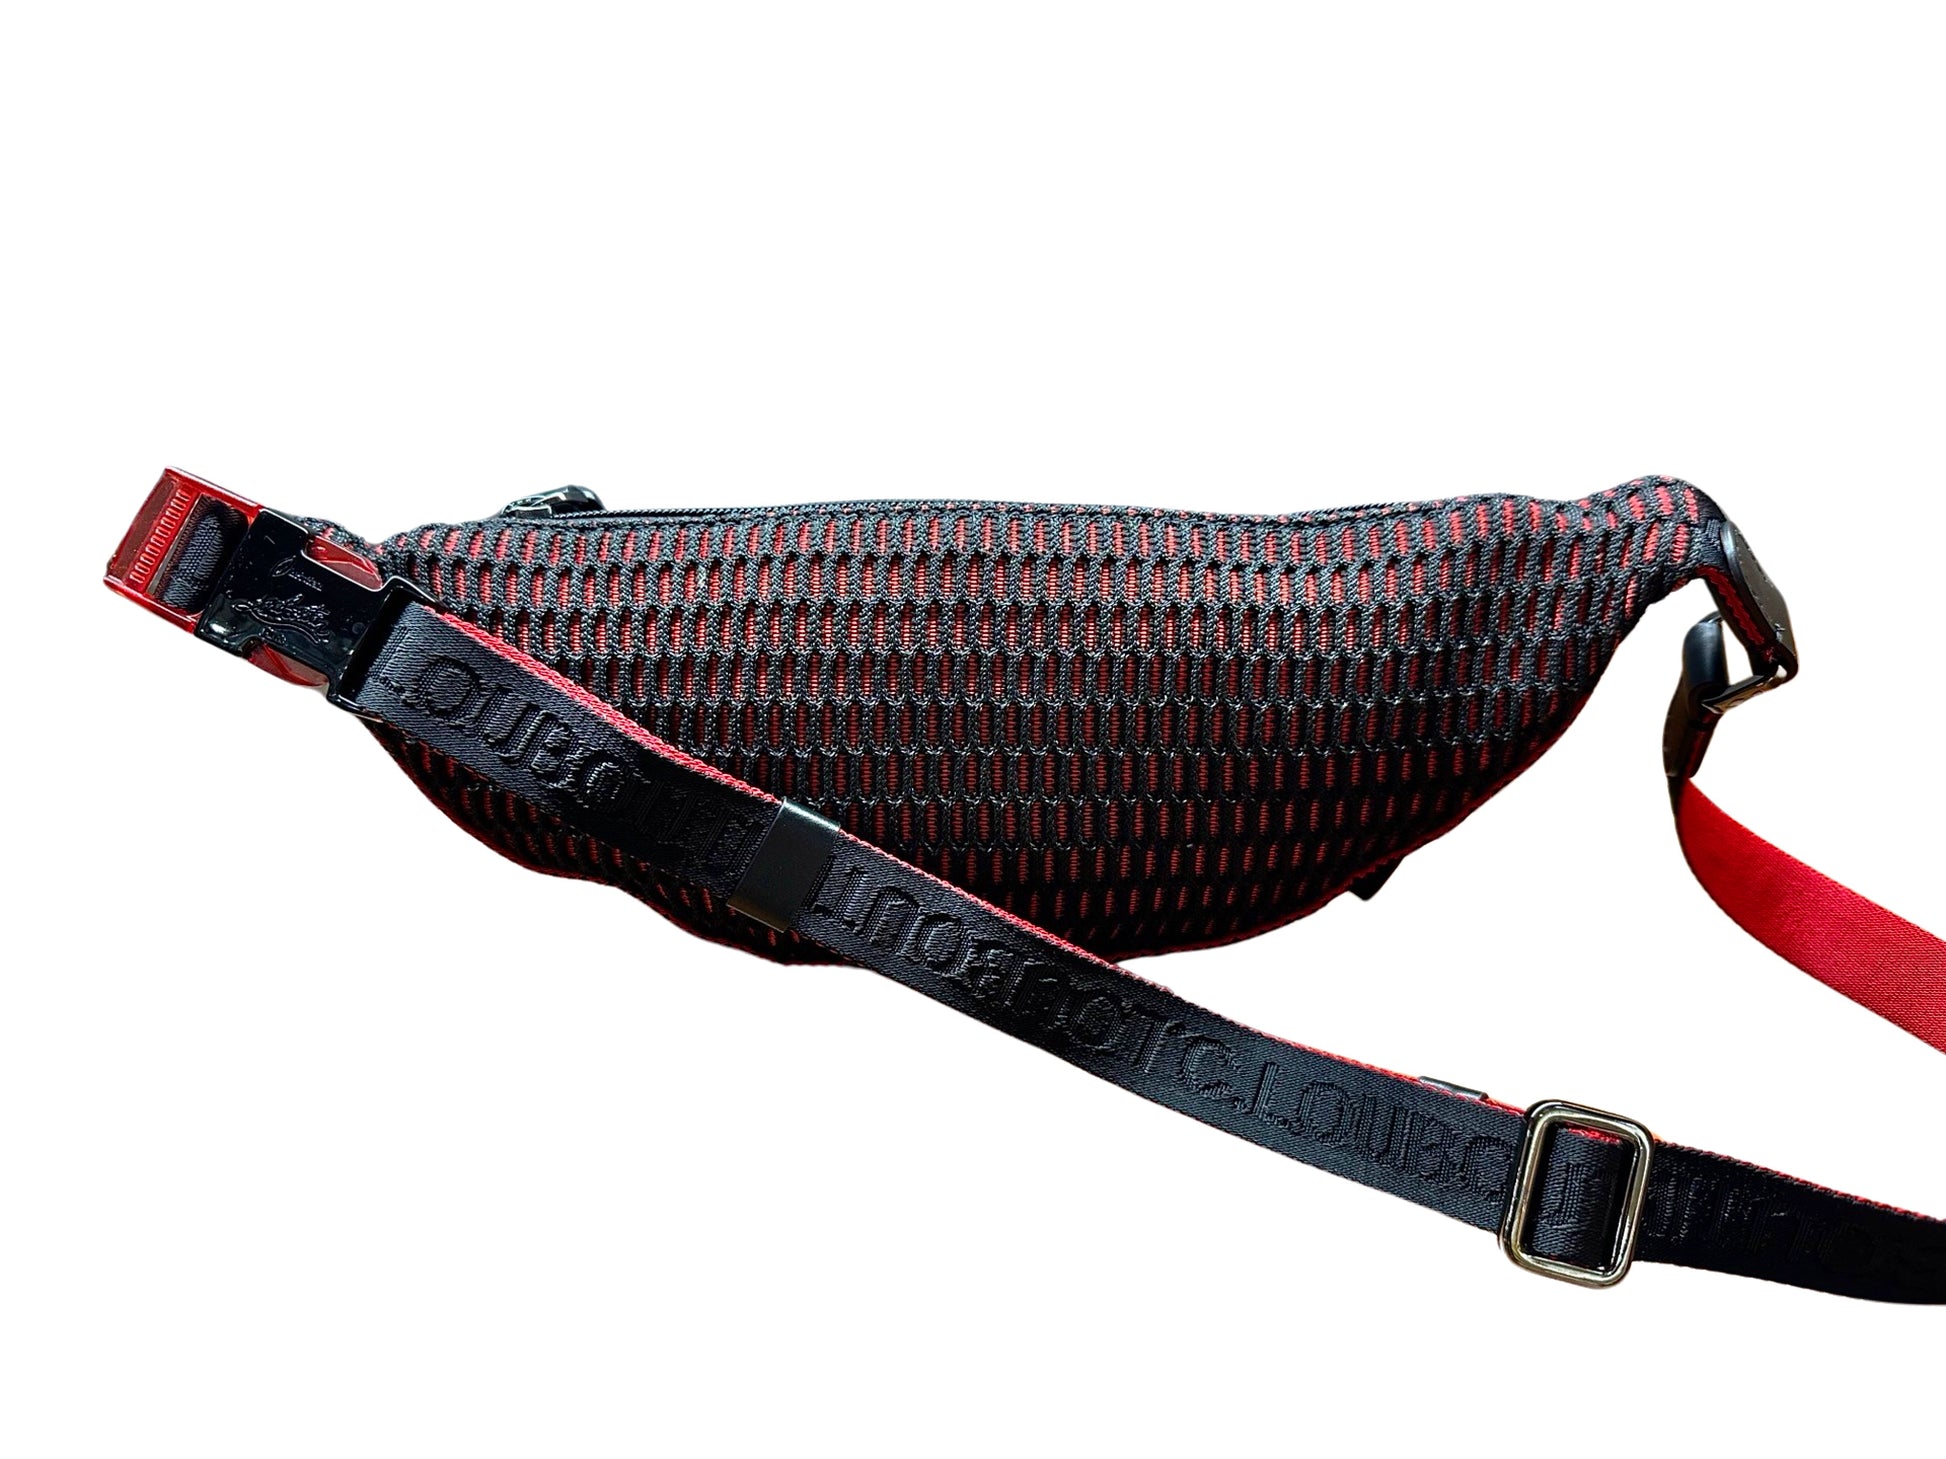 Back of belt bag with red + black textured design